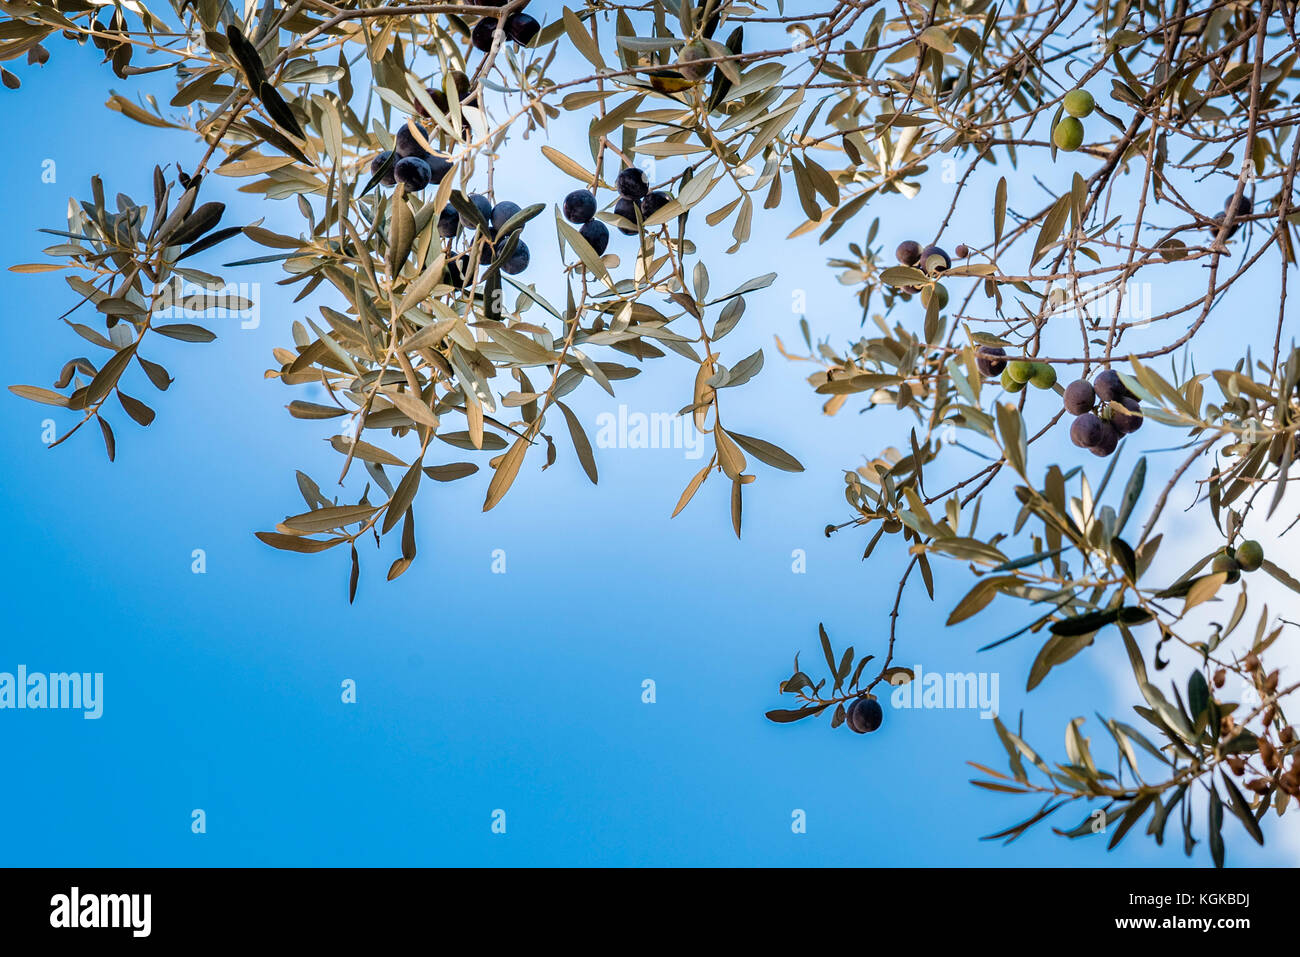 Le olive crescono su un albero di olivo, basso angolo di visione. Mediterraneo ulivo rami con frutti immaturi di olive nere in Roma, Italia. Foto Stock